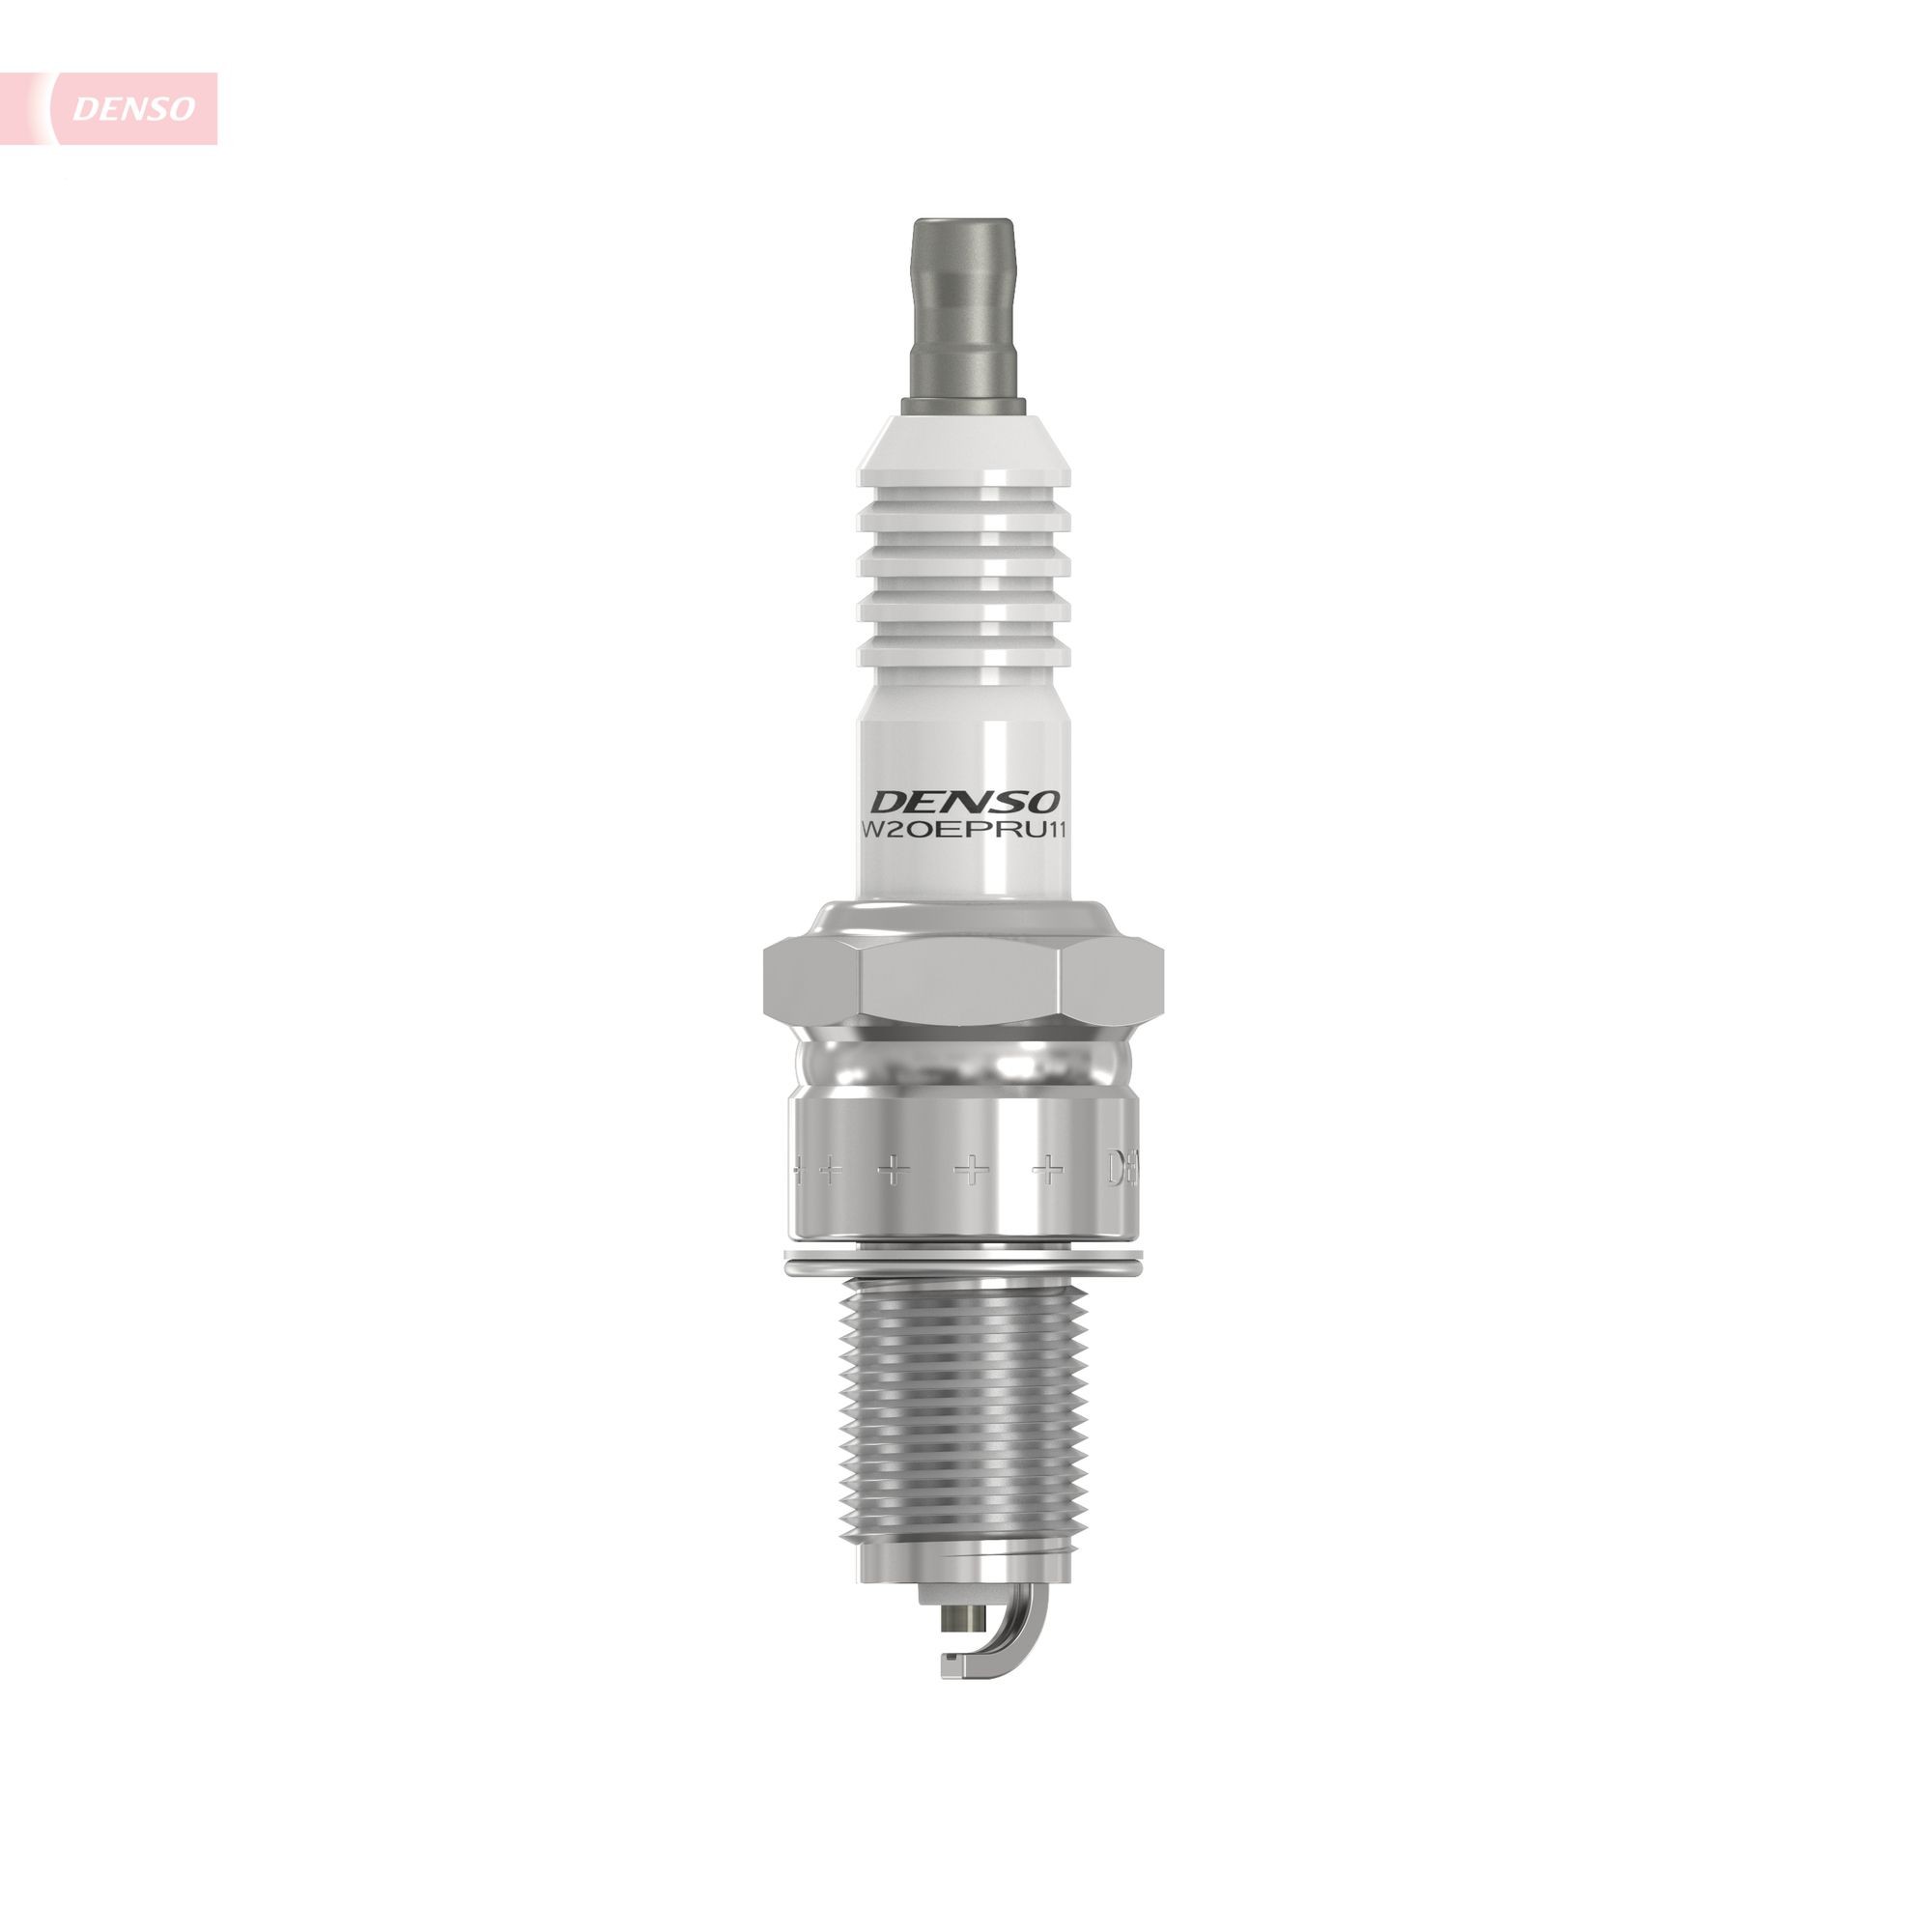 DENSO Nickel W20EPR-U11 Spark plug Spanner Size: 20.6